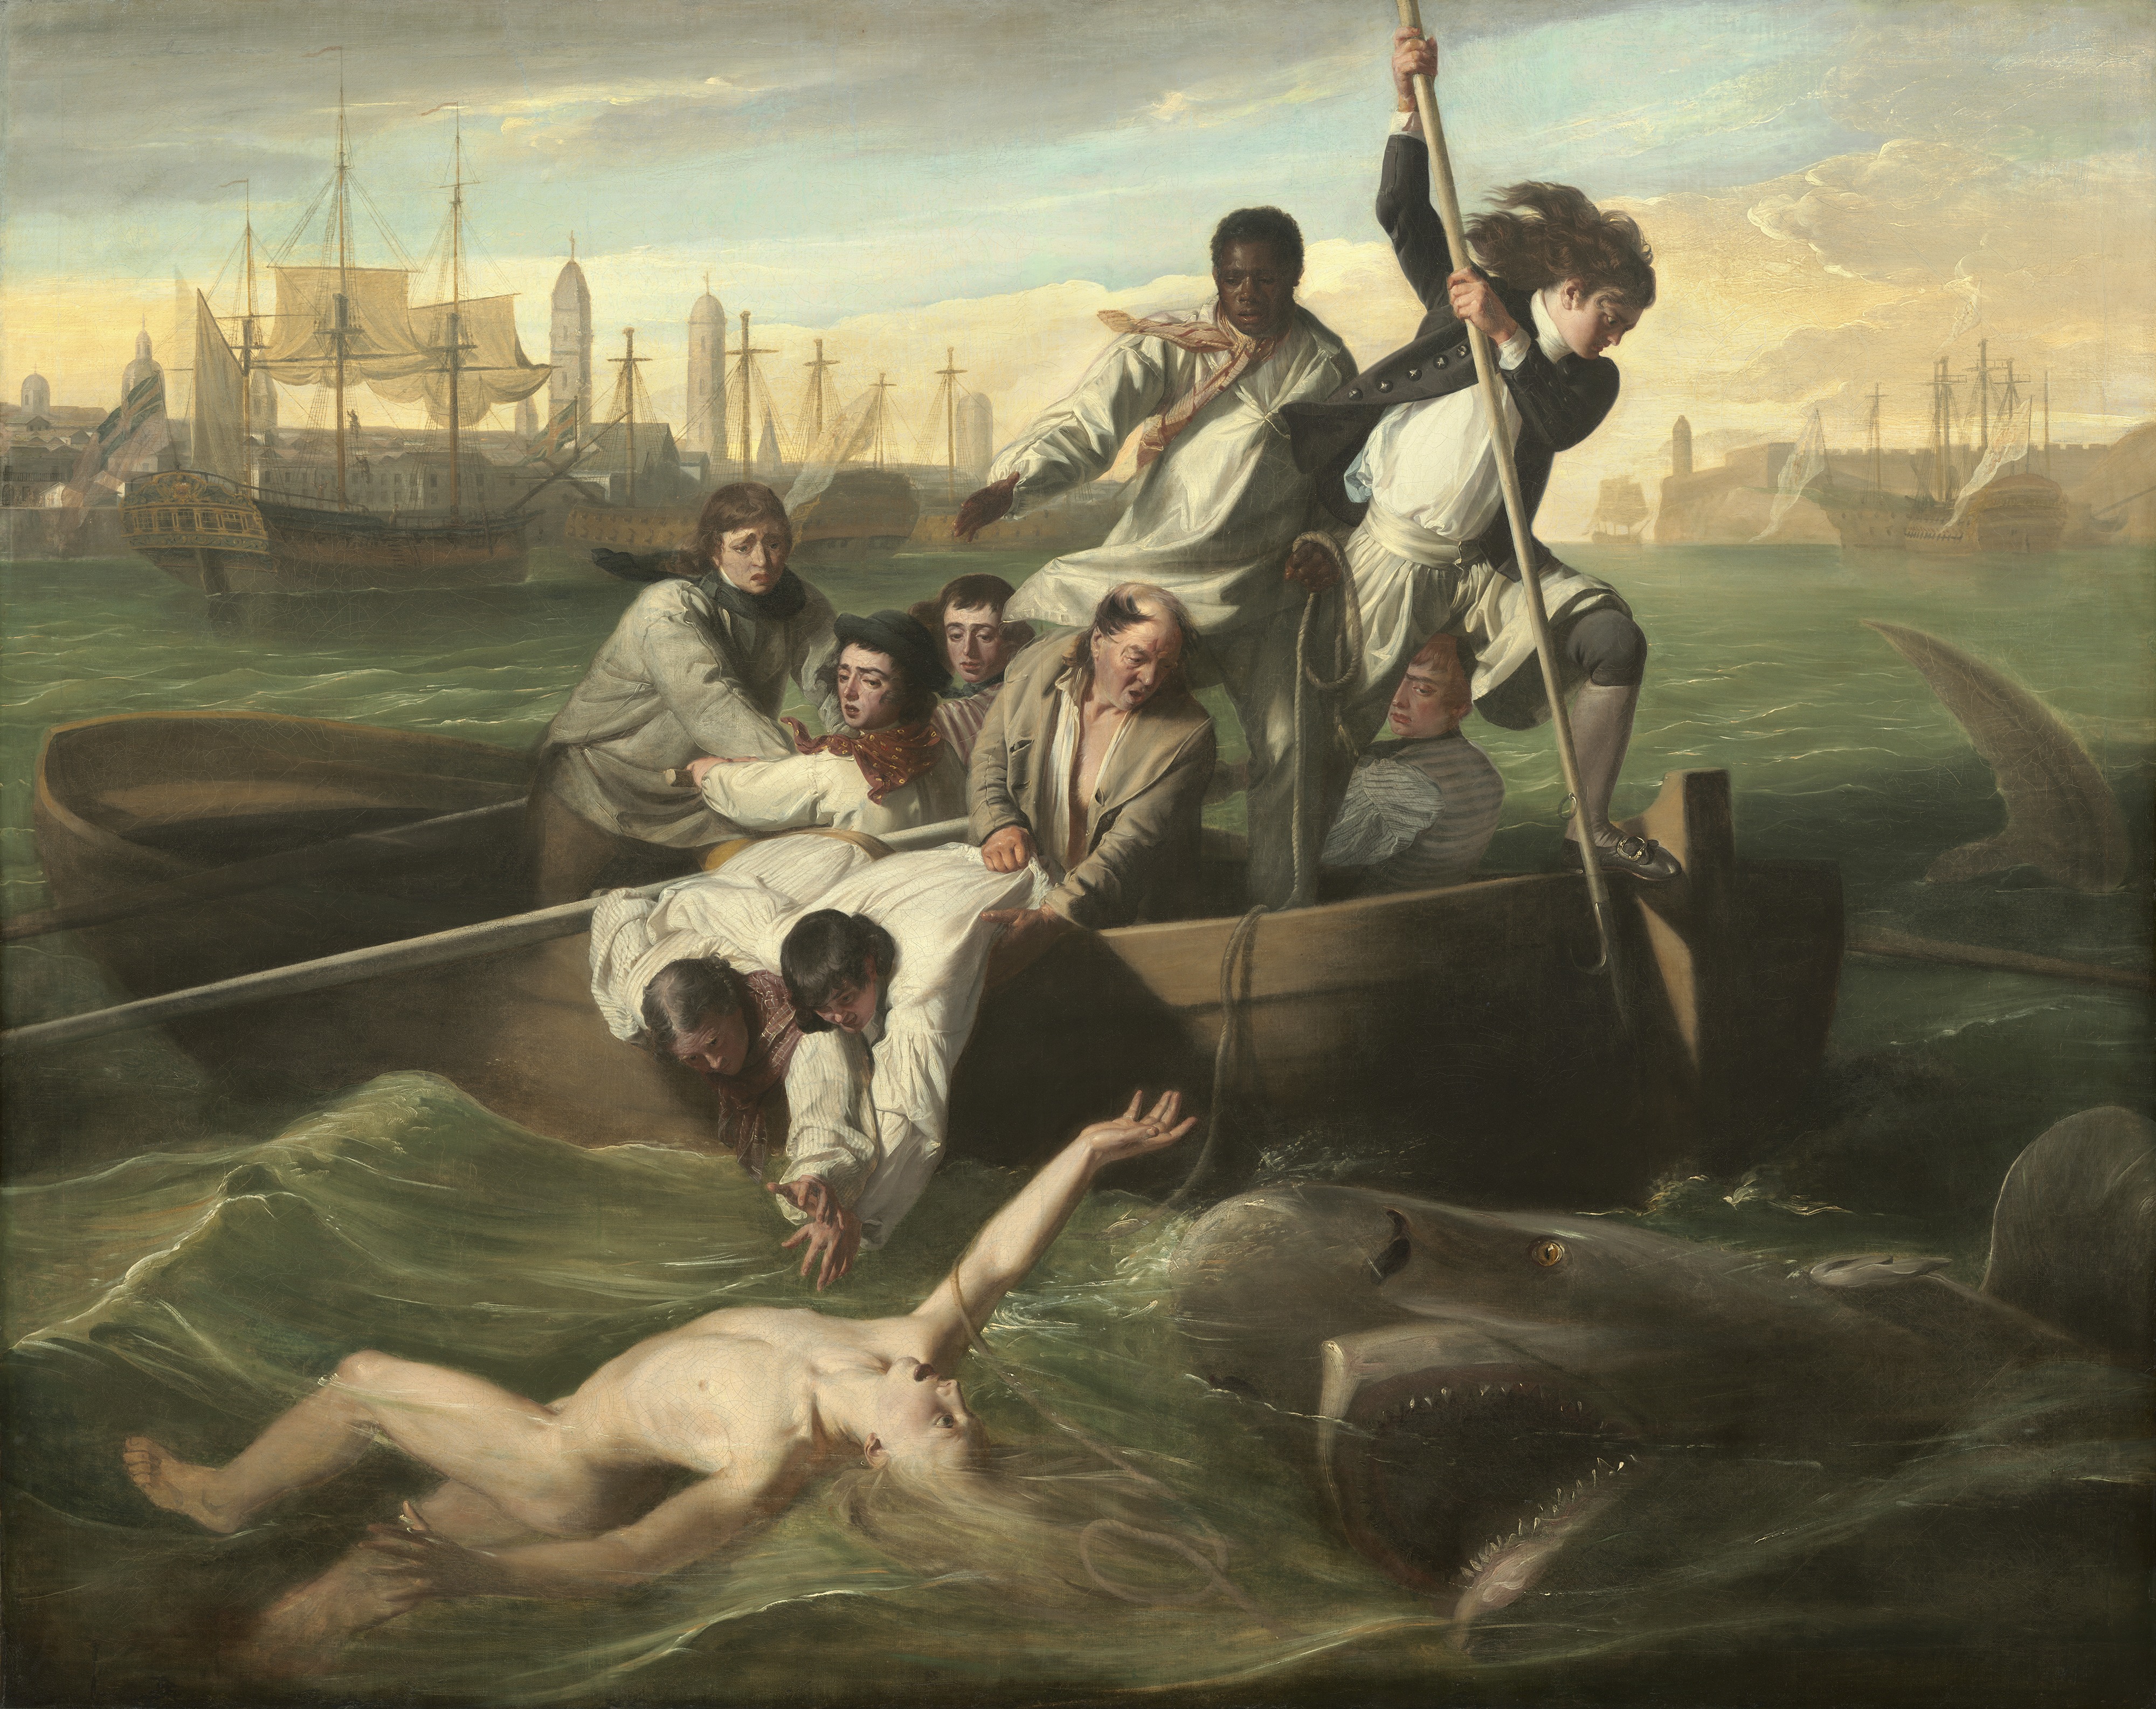 Watson et le requin by John Singleton Copley - 1778 